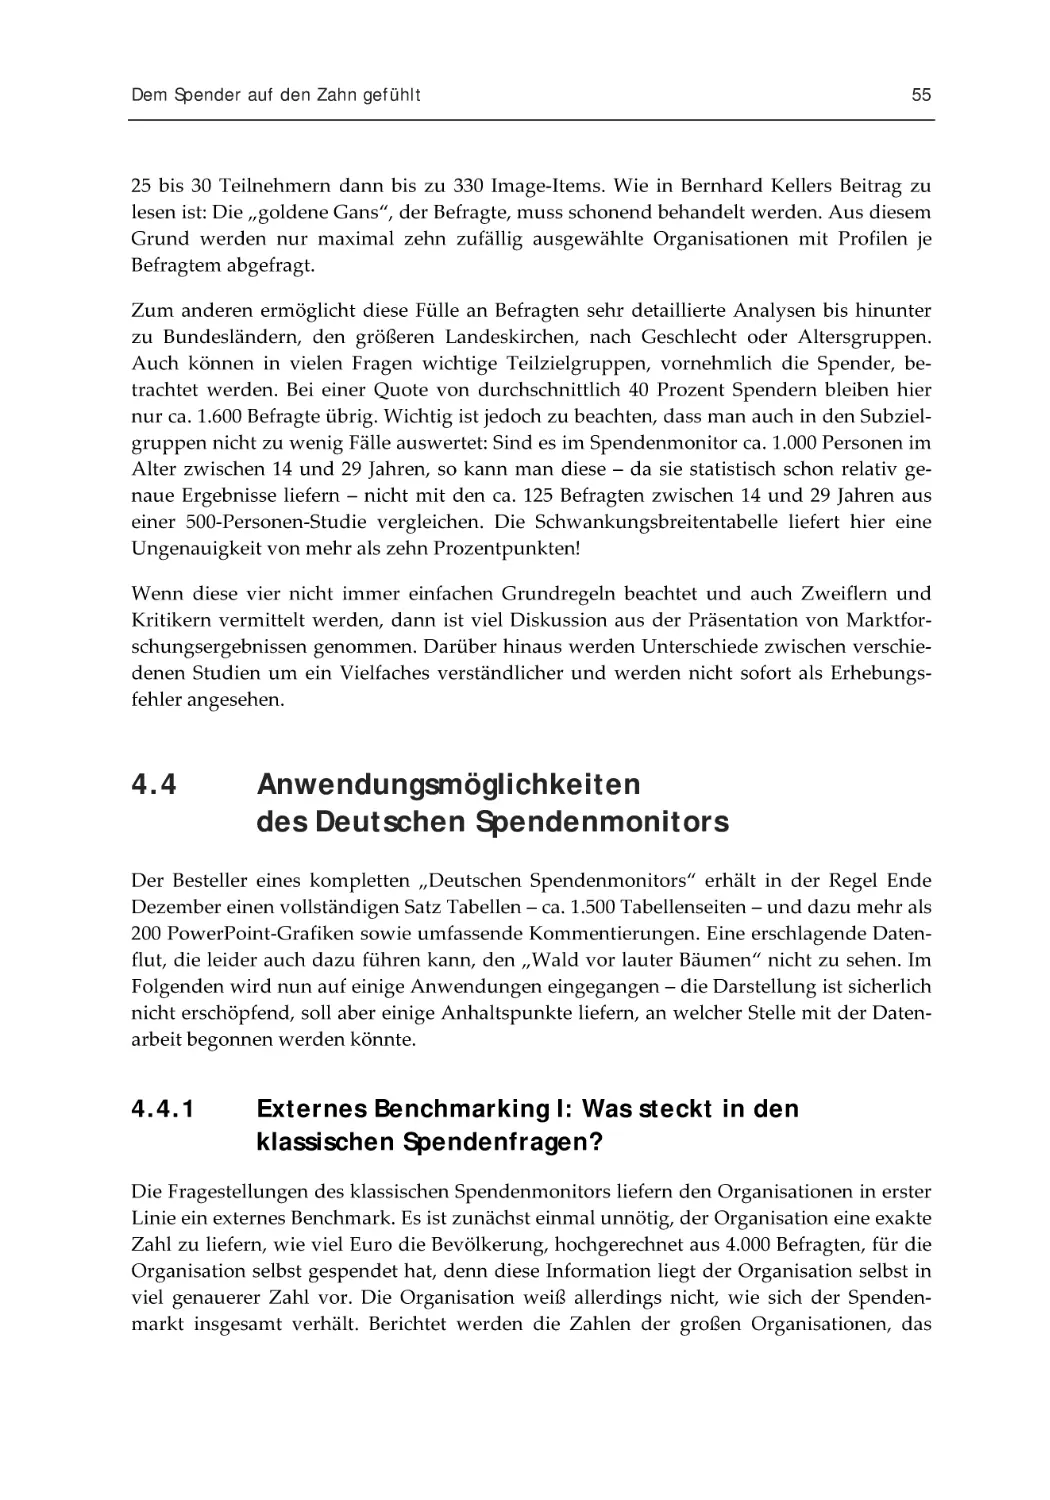 4.4 Anwendungsmöglichkeiten des Deutschen Spendenmonitors
4.4.1 Externes Benchmarking I